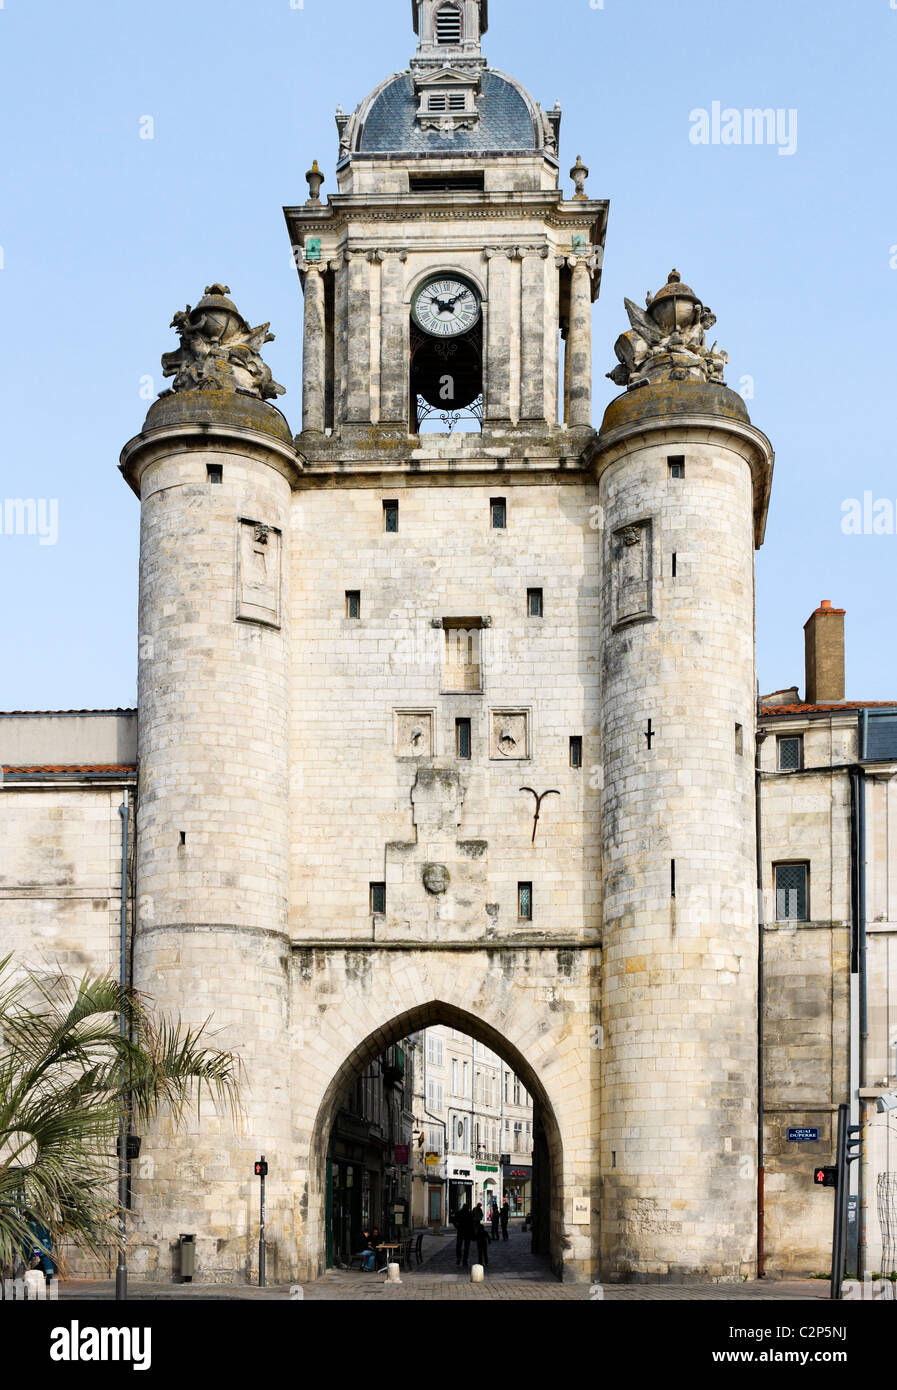 Cancello sotto la Grosse Horloge (Città orologio), La Rochelle, Poitou Charentes, Francia Foto Stock